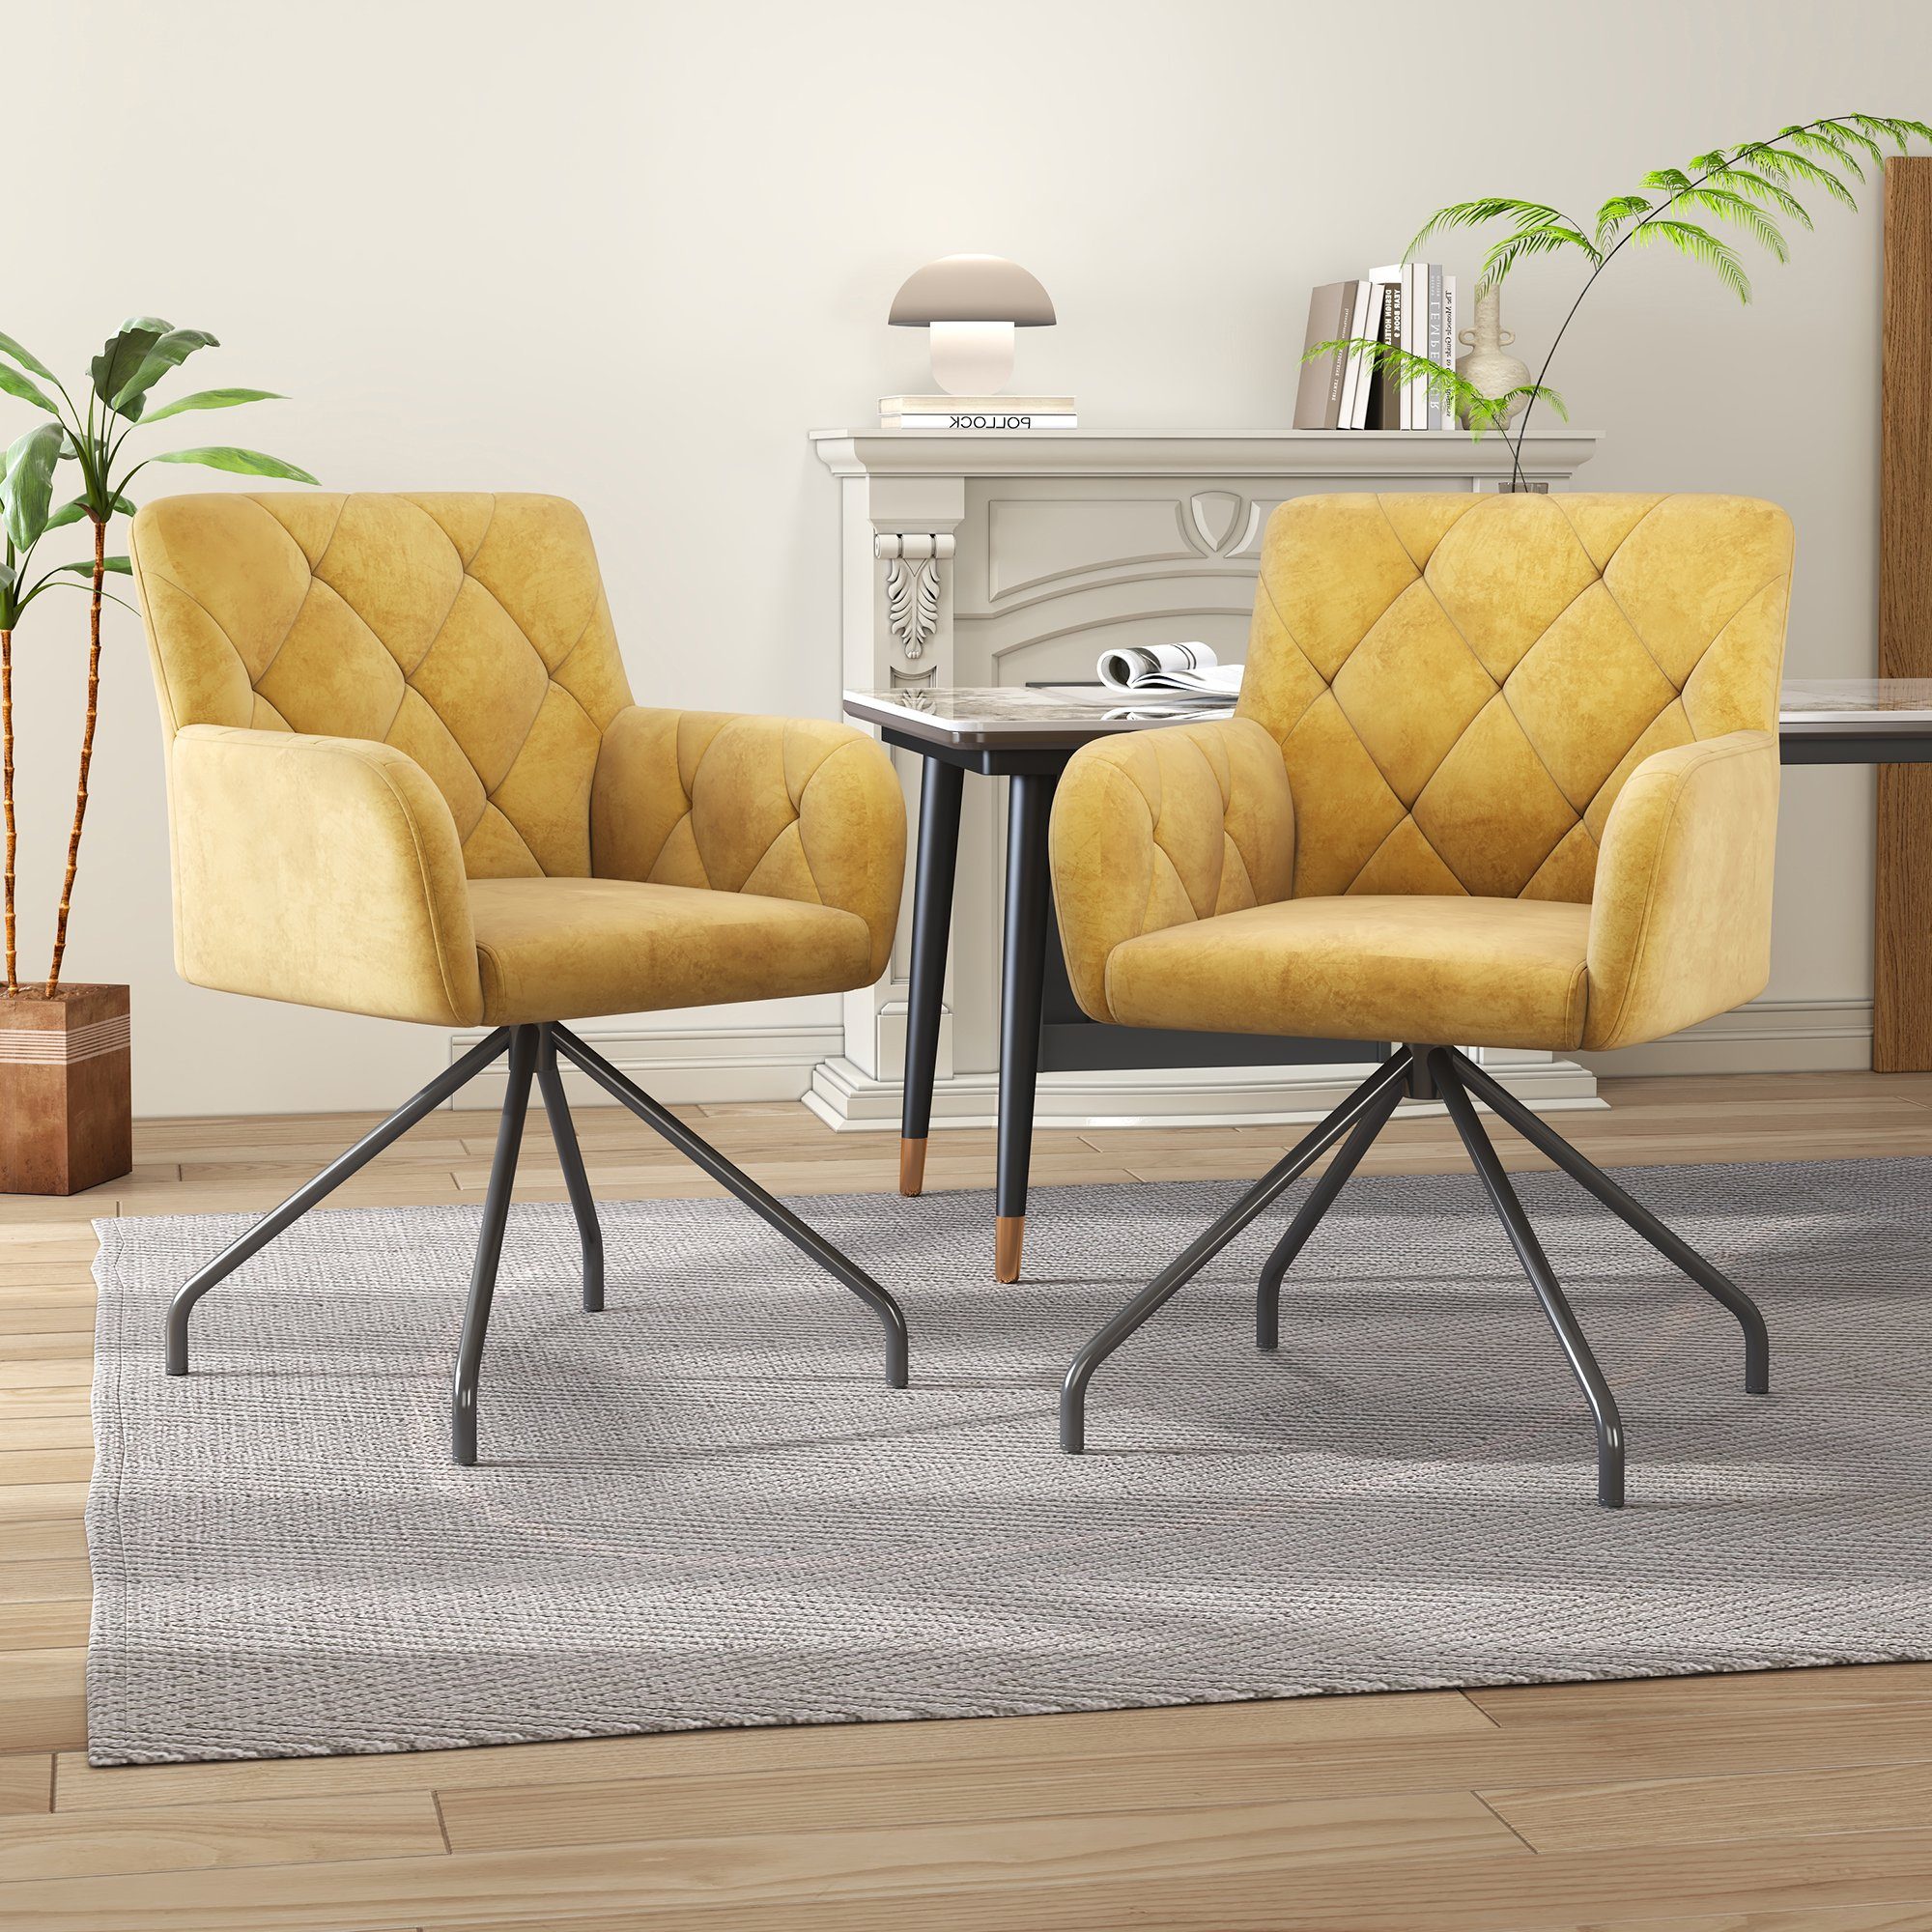 Odikalo Esszimmerstuhl 2er Set Gepolstert Sessel Wohnzimmer 4 Metallbeinen Samt grau/gelb